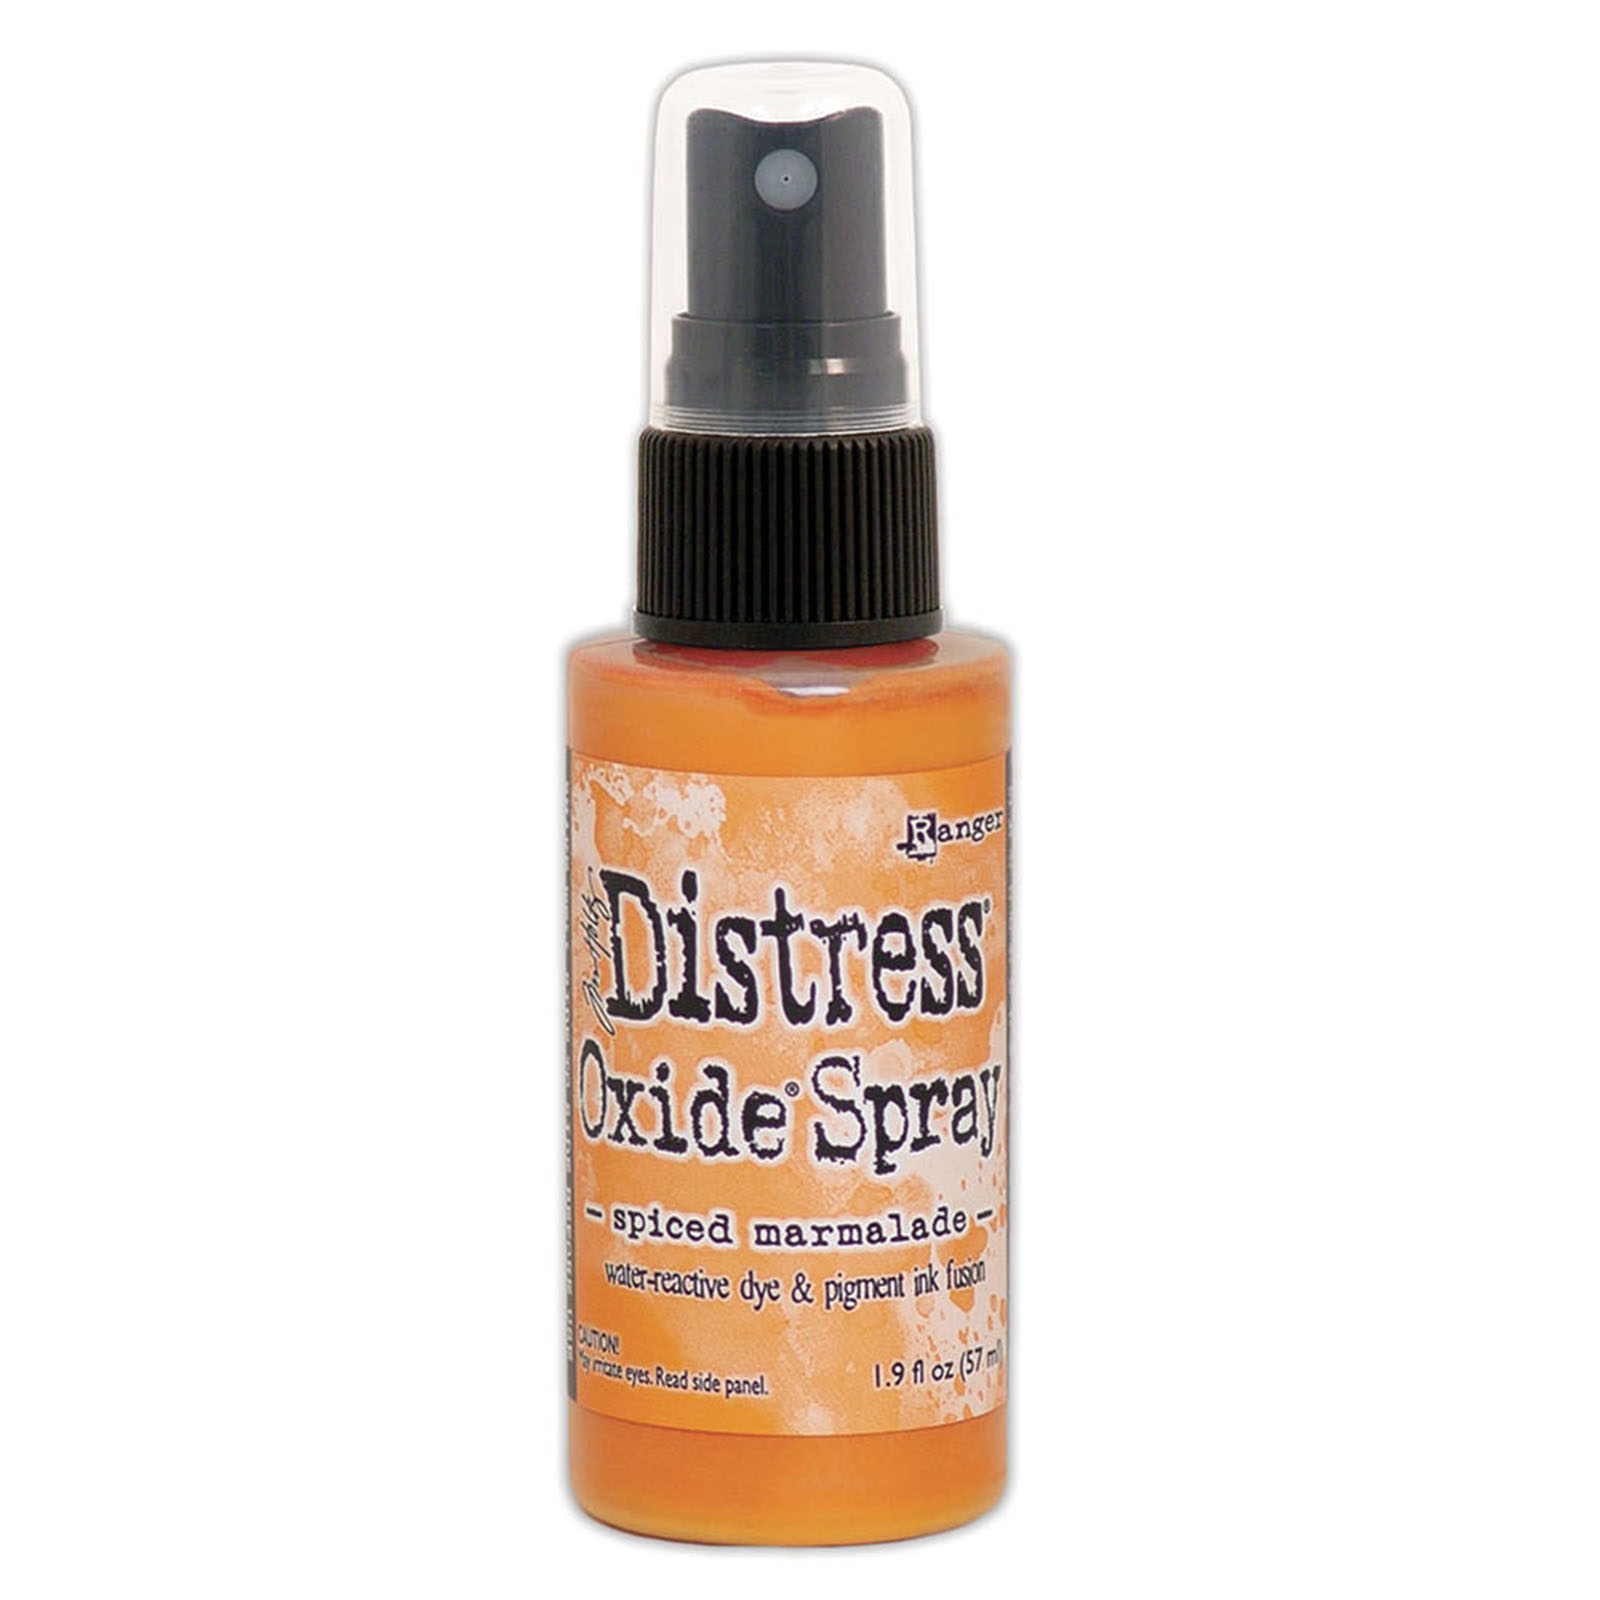 Ranger • Distress oxide spray Spiced marmalade